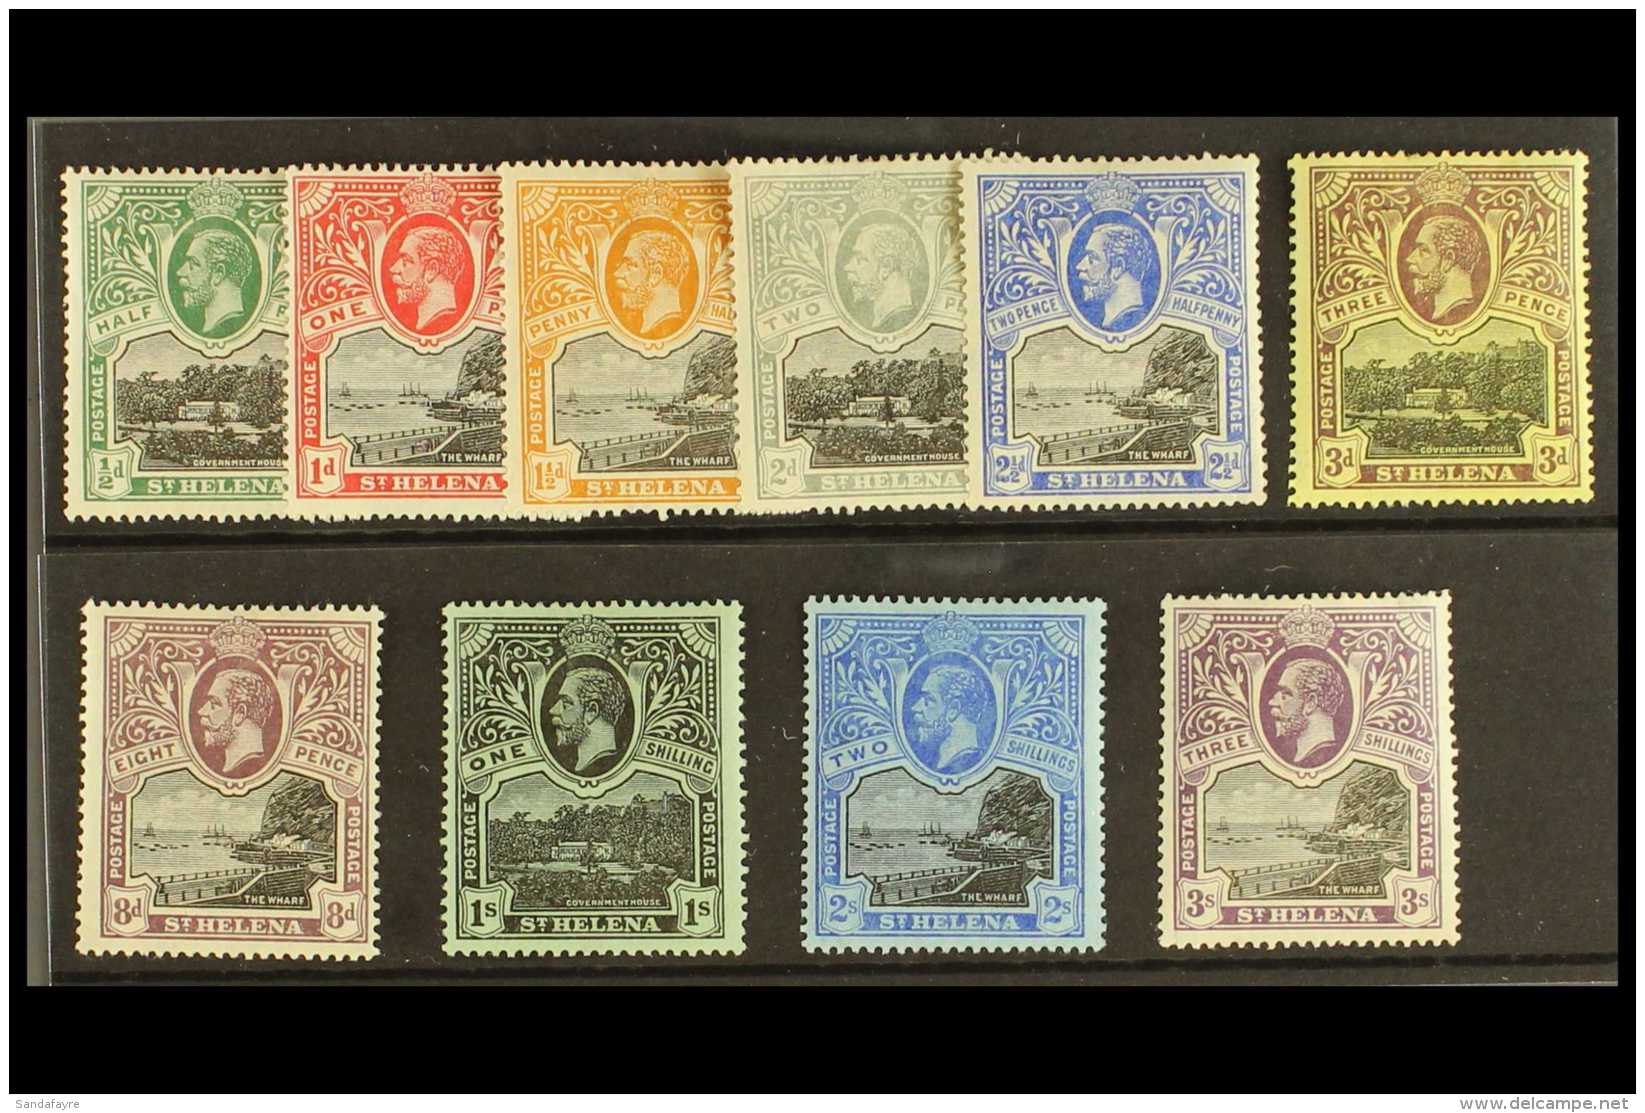 1912-16 Wmk Mult Crown CA Set Complete, SG 72/81, Fine Mint (10 Stamps) For More Images, Please Visit... - St. Helena